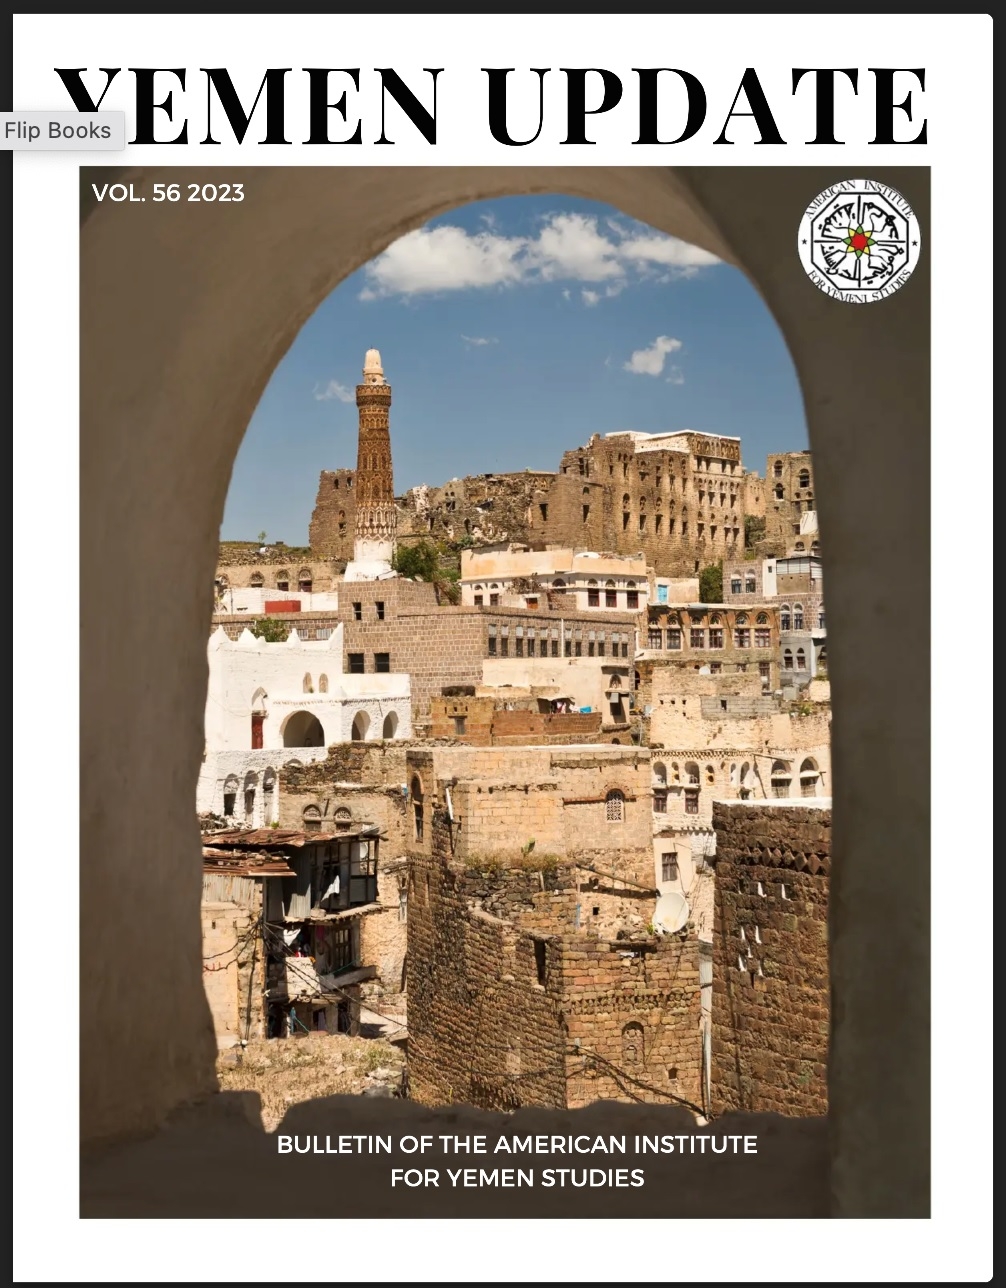 Photo of Yemen Update (vol. 56, 2023), the journal of the American Institute for Yemeni Studies